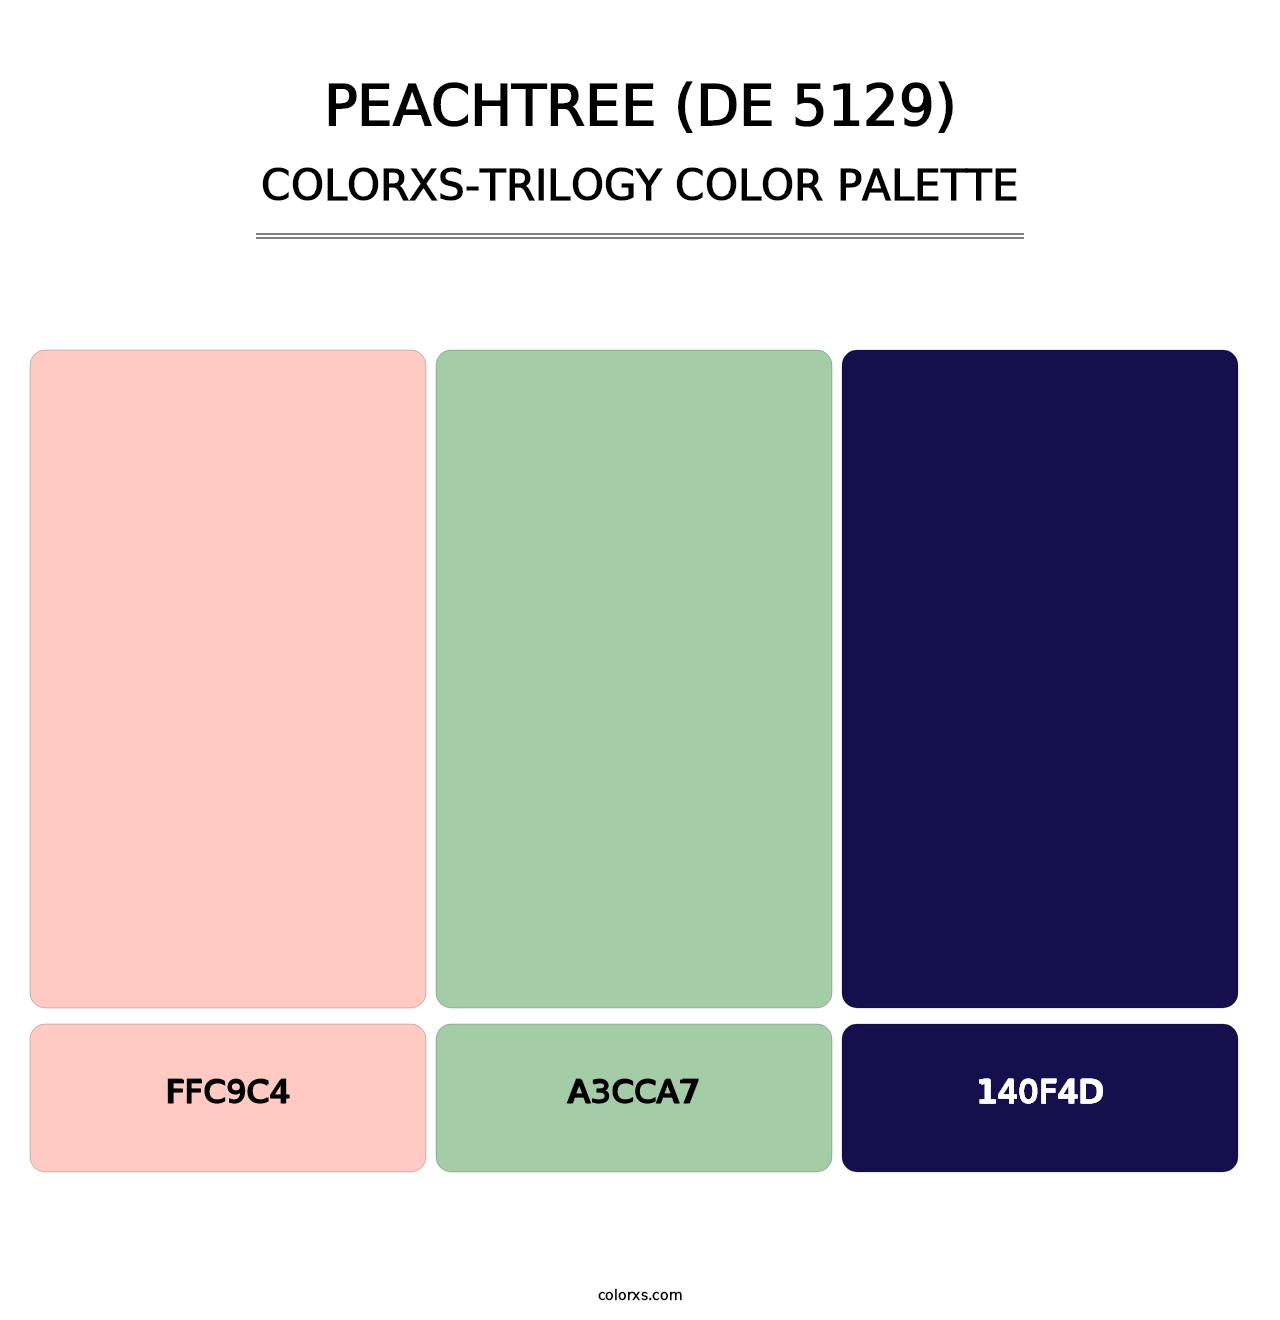 Peachtree (DE 5129) - Colorxs Trilogy Palette